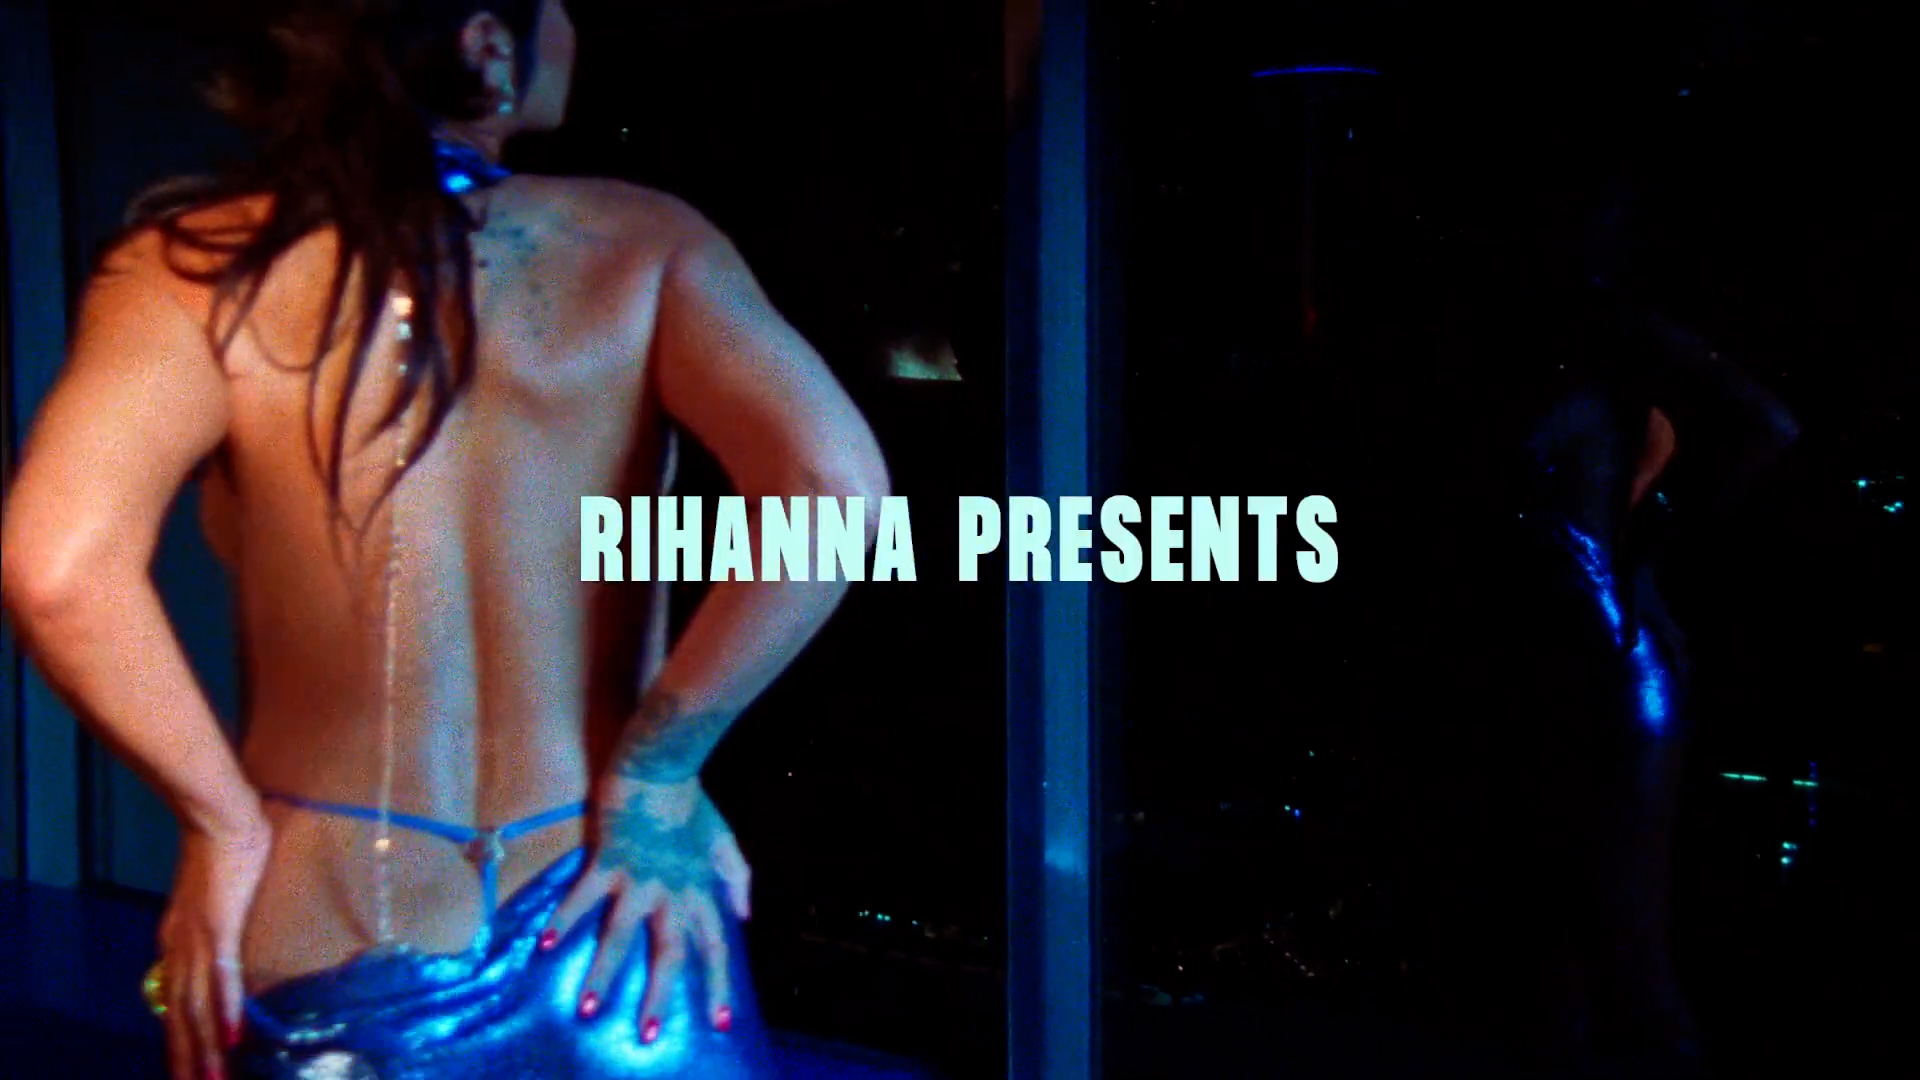 FOTOS Rihanna se roba el show! - Photo 33